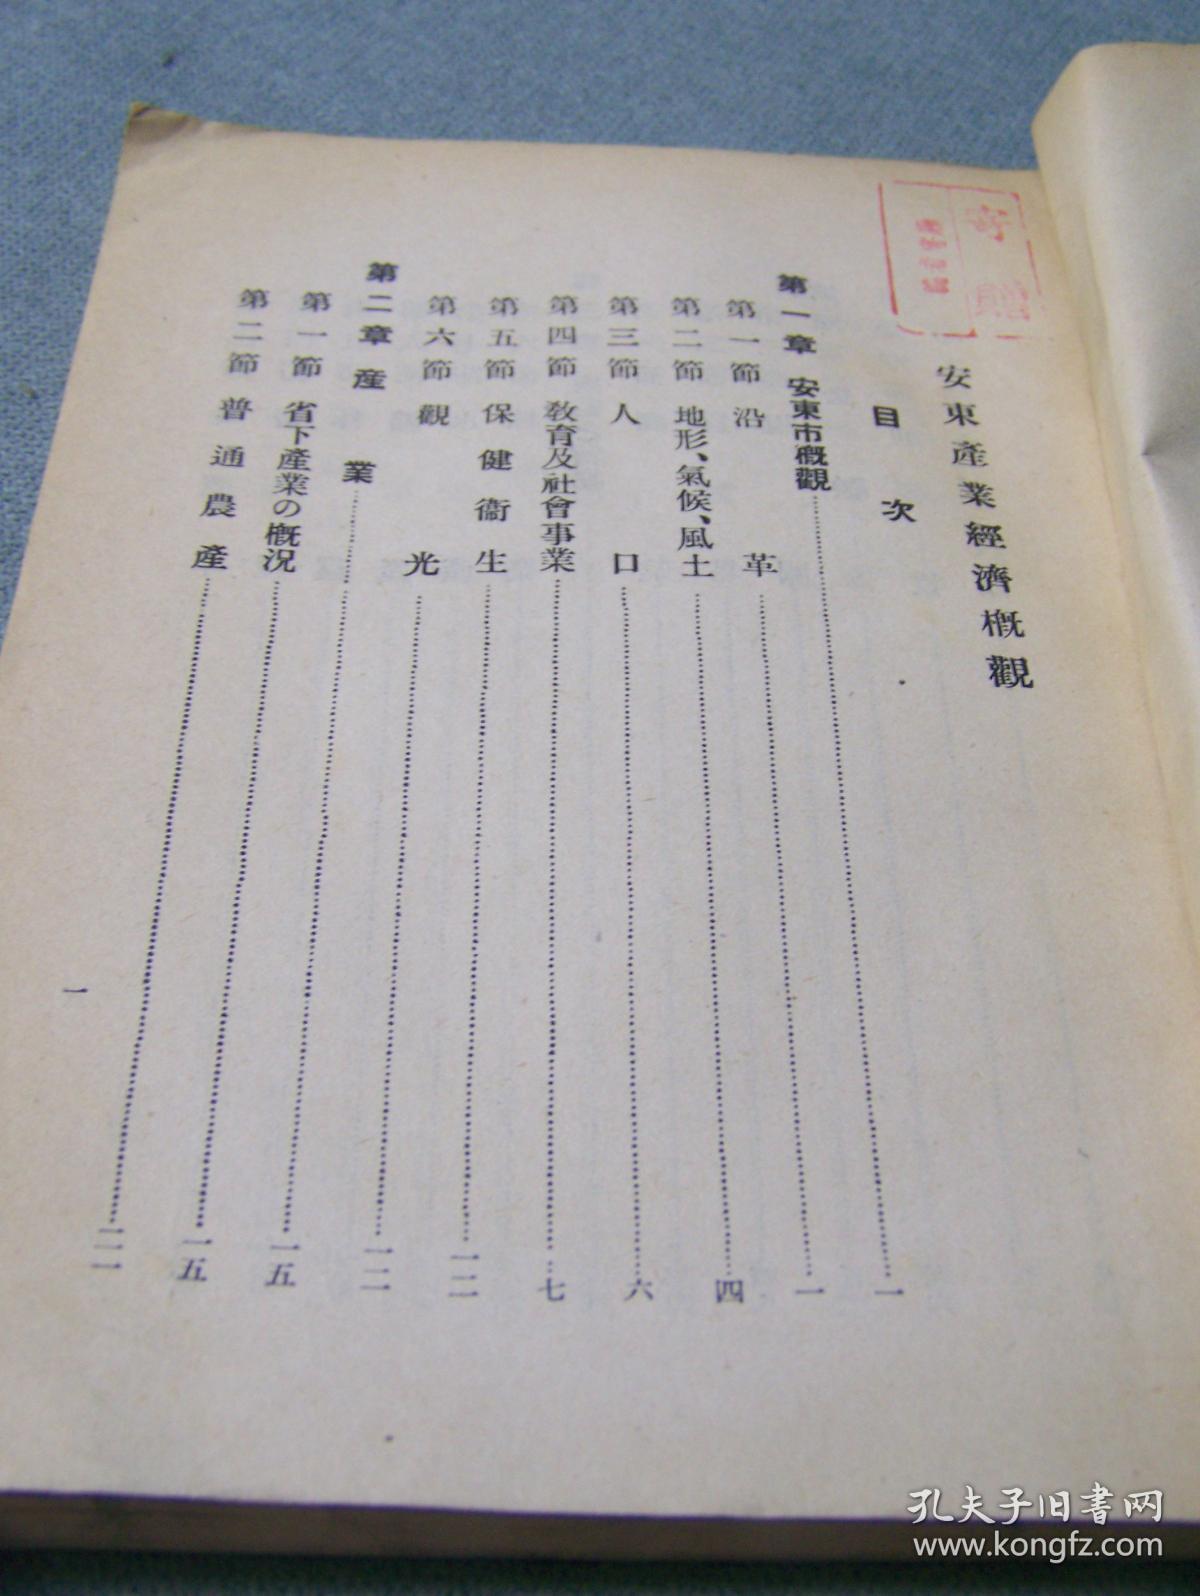 《安东产业经济概观》 安东商工公会 1942年出版 日文